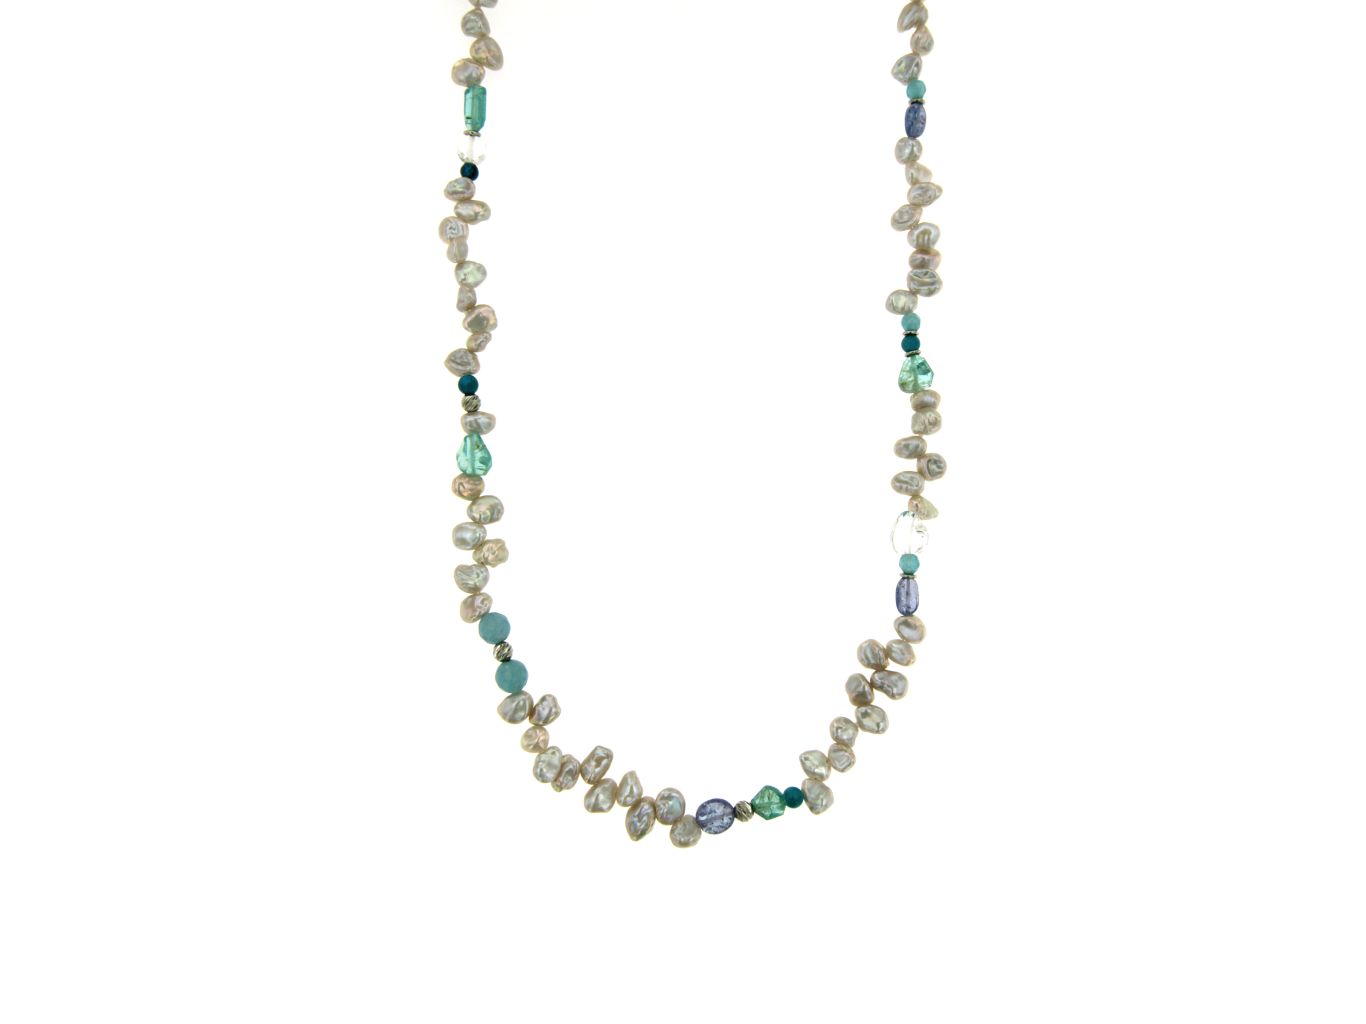 Collana in perle keshi grigie, apatite, tanzanite e quarzo. Chiusura argento 925